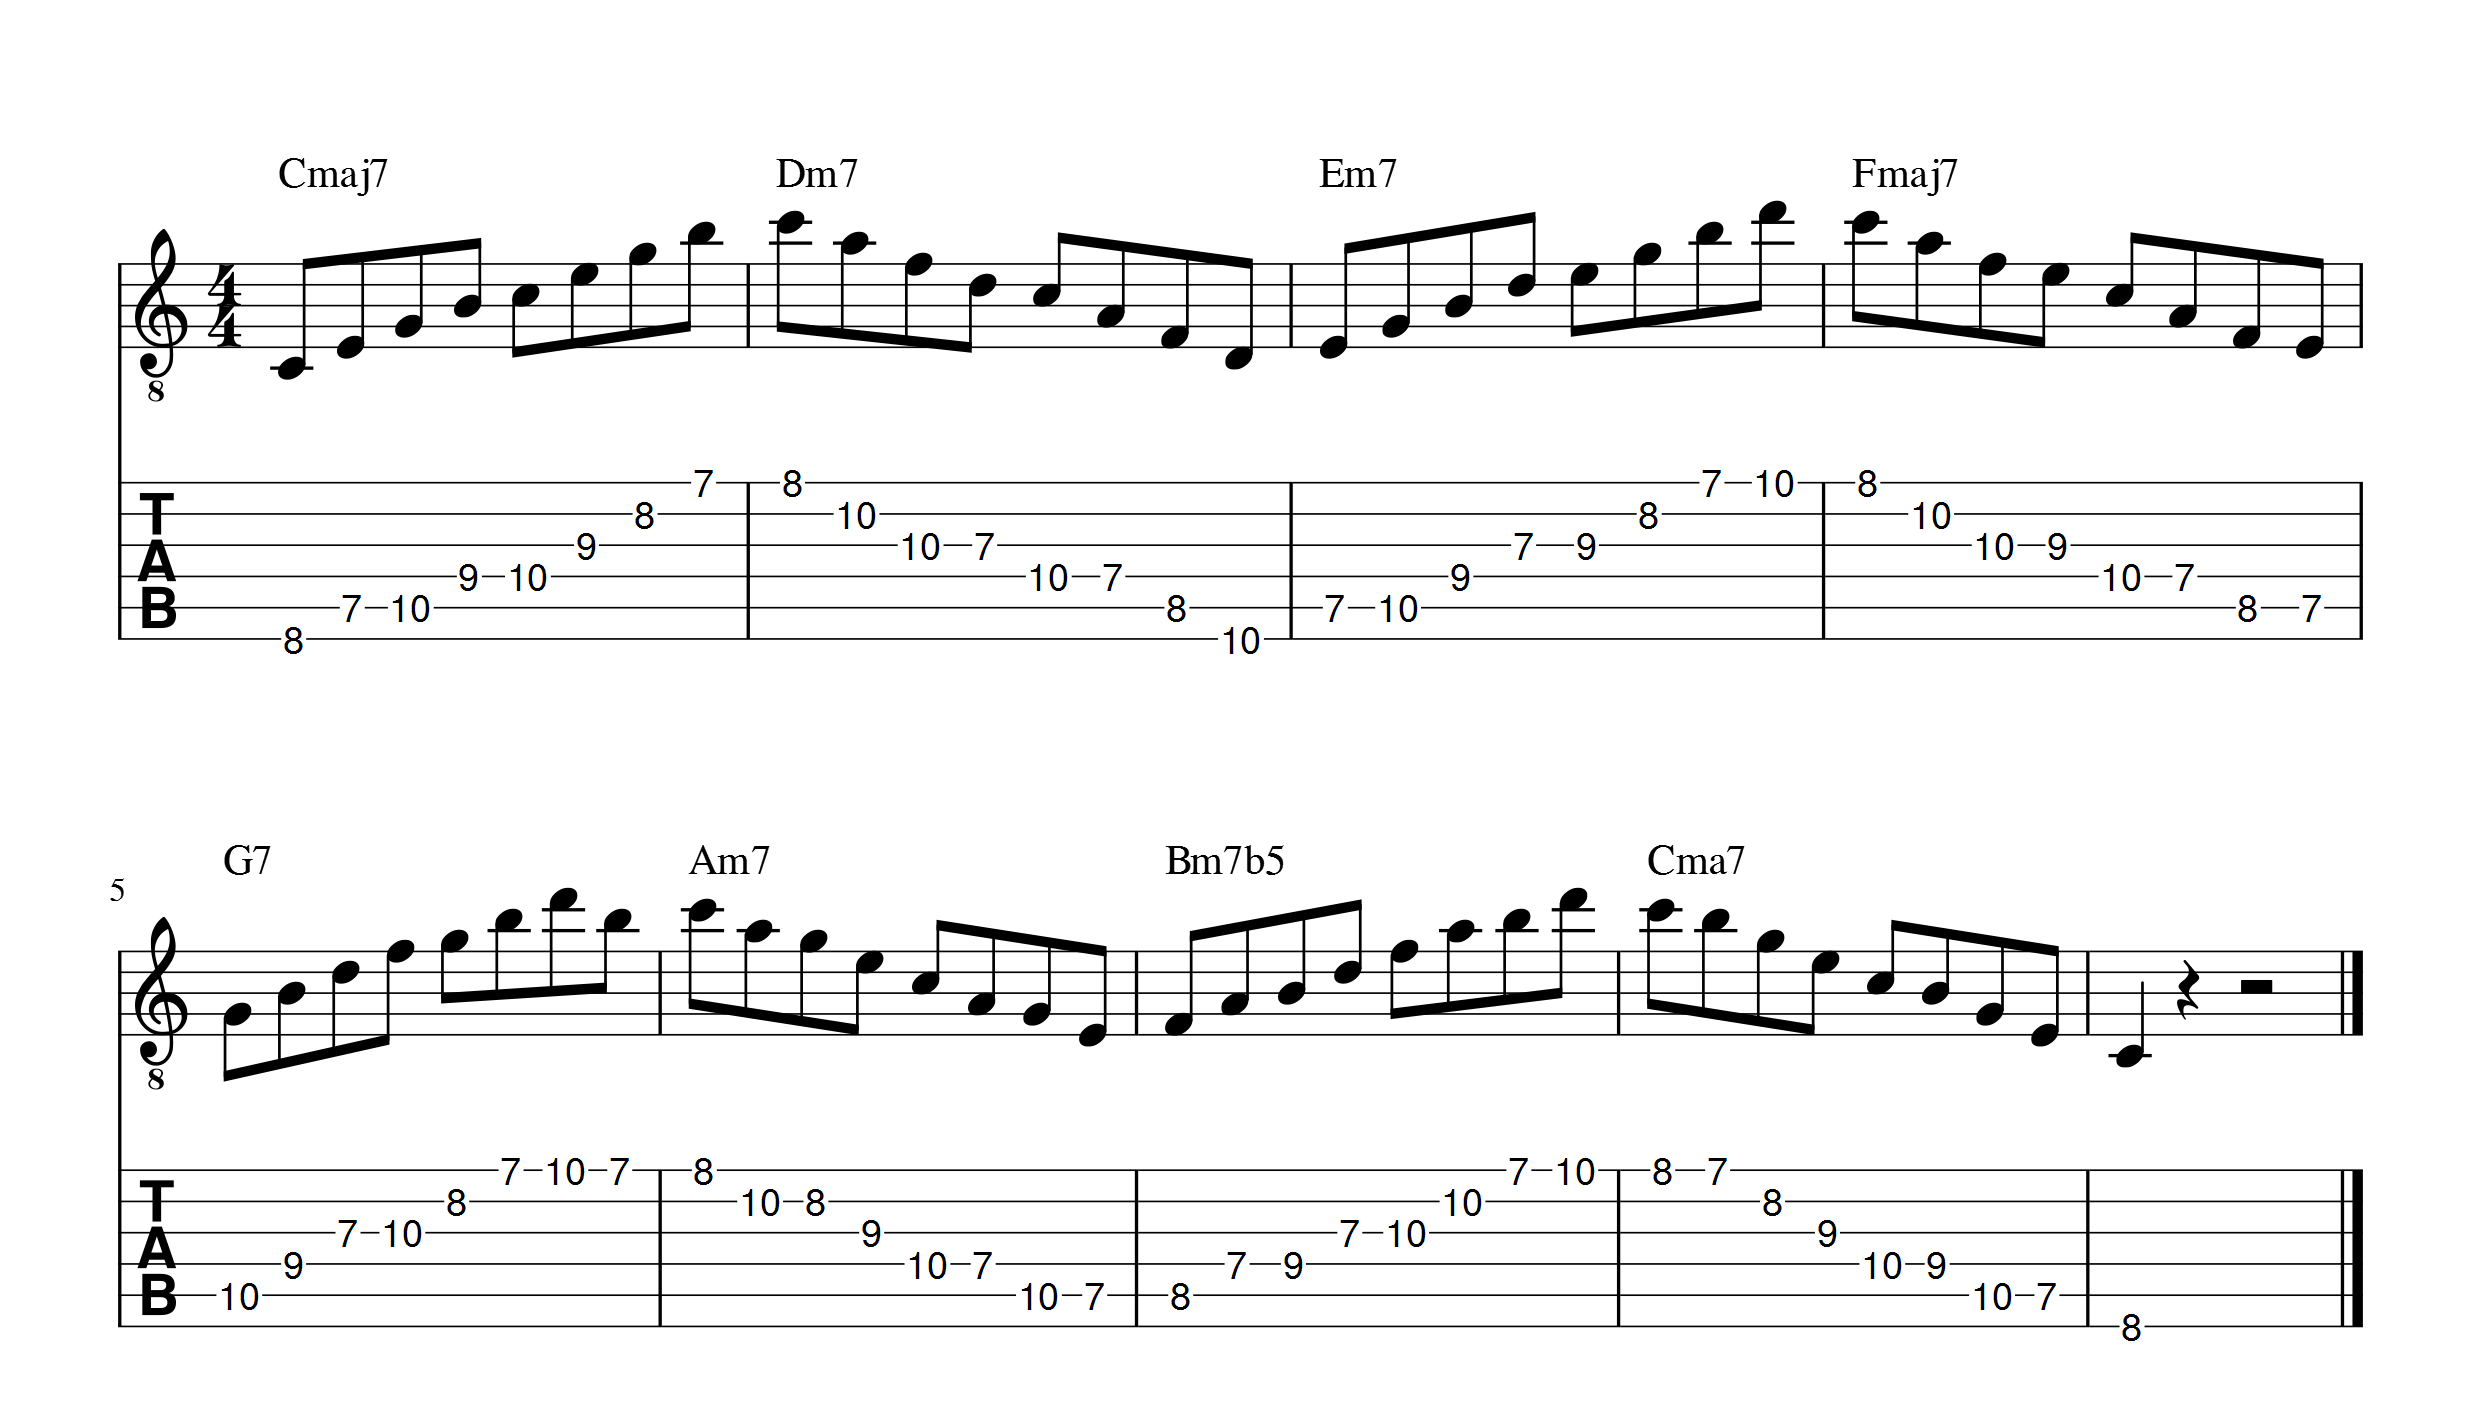 les sept arpeges de la  gamme de do majeur harmonisée position 7 apprendre la guitare